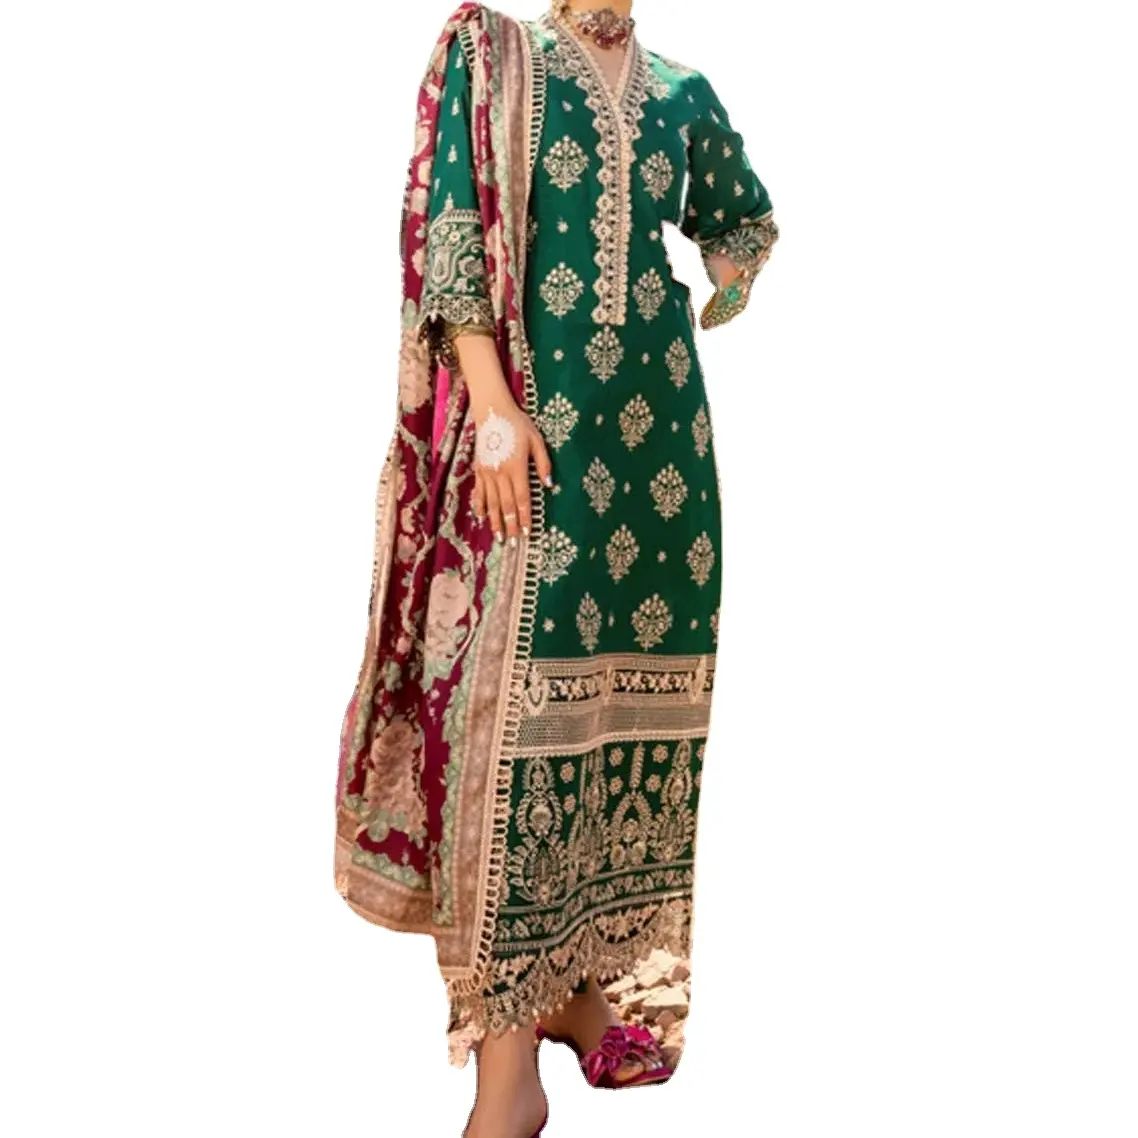 Gaun mewah pakaian pengantin Pakistan dan India artikel populer terbaru terkenal untuk musim pernikahan tekstur kain kaya.